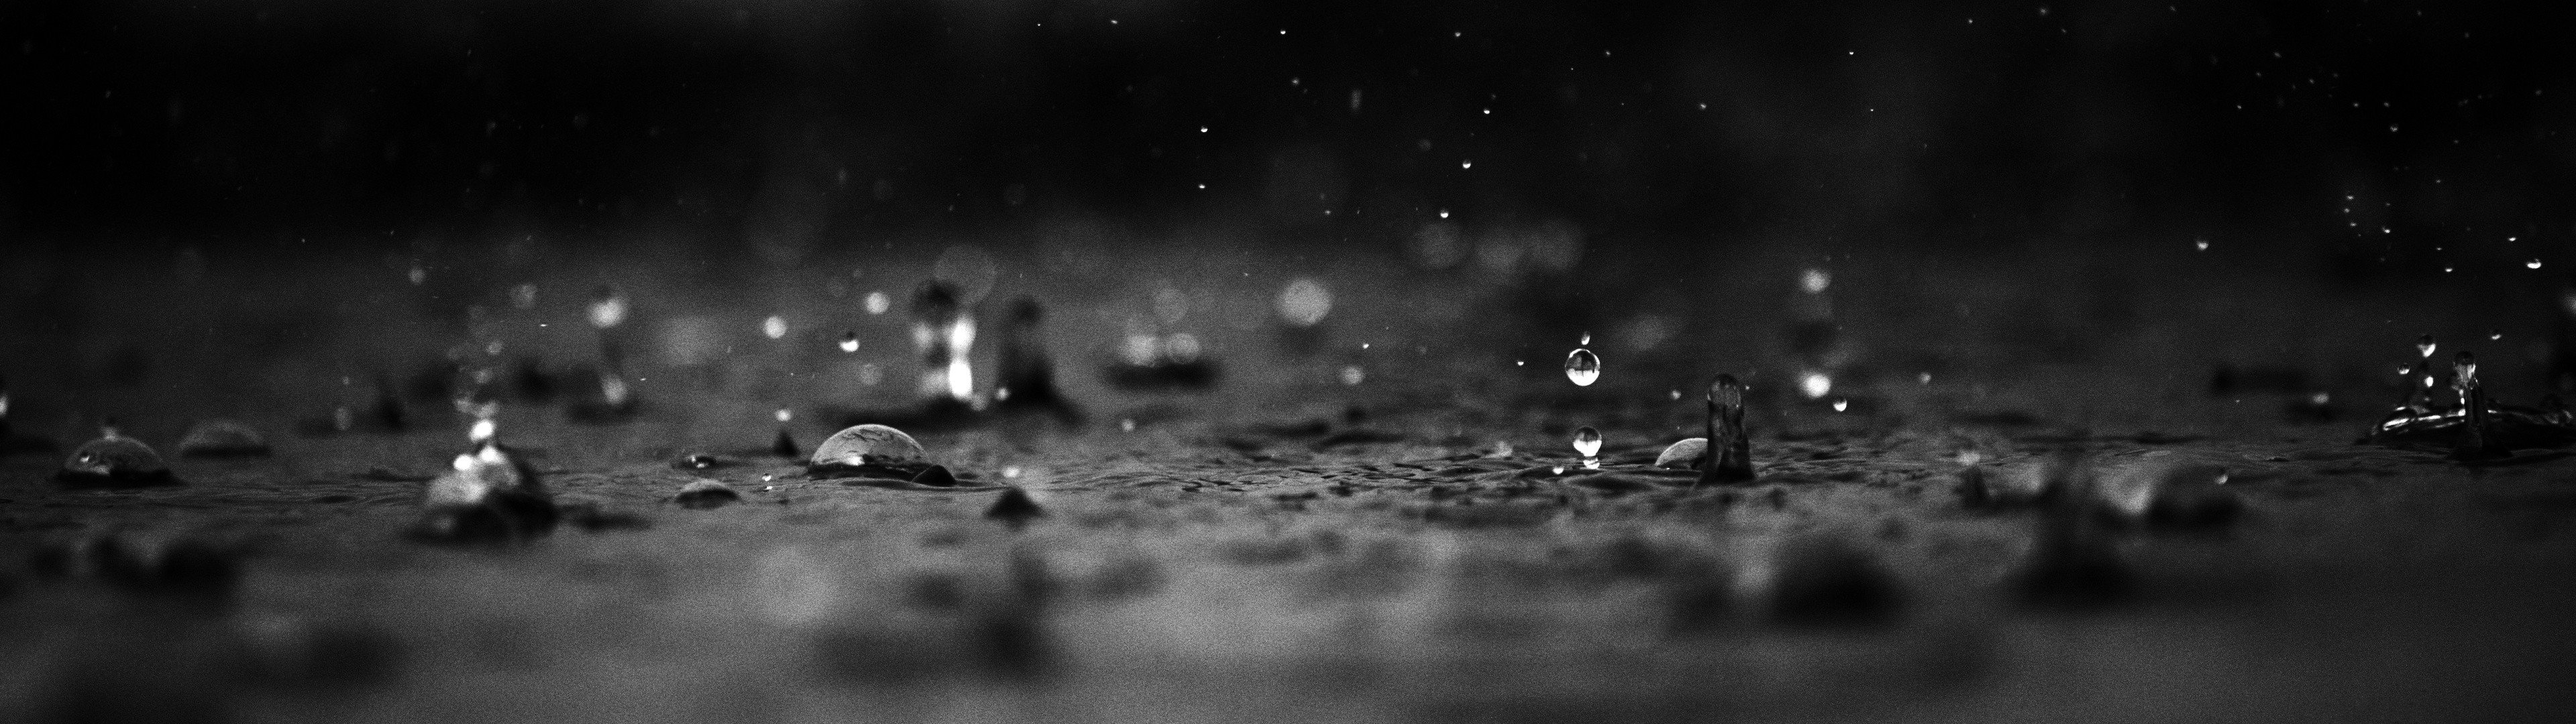 rain, Droplets Wallpaper